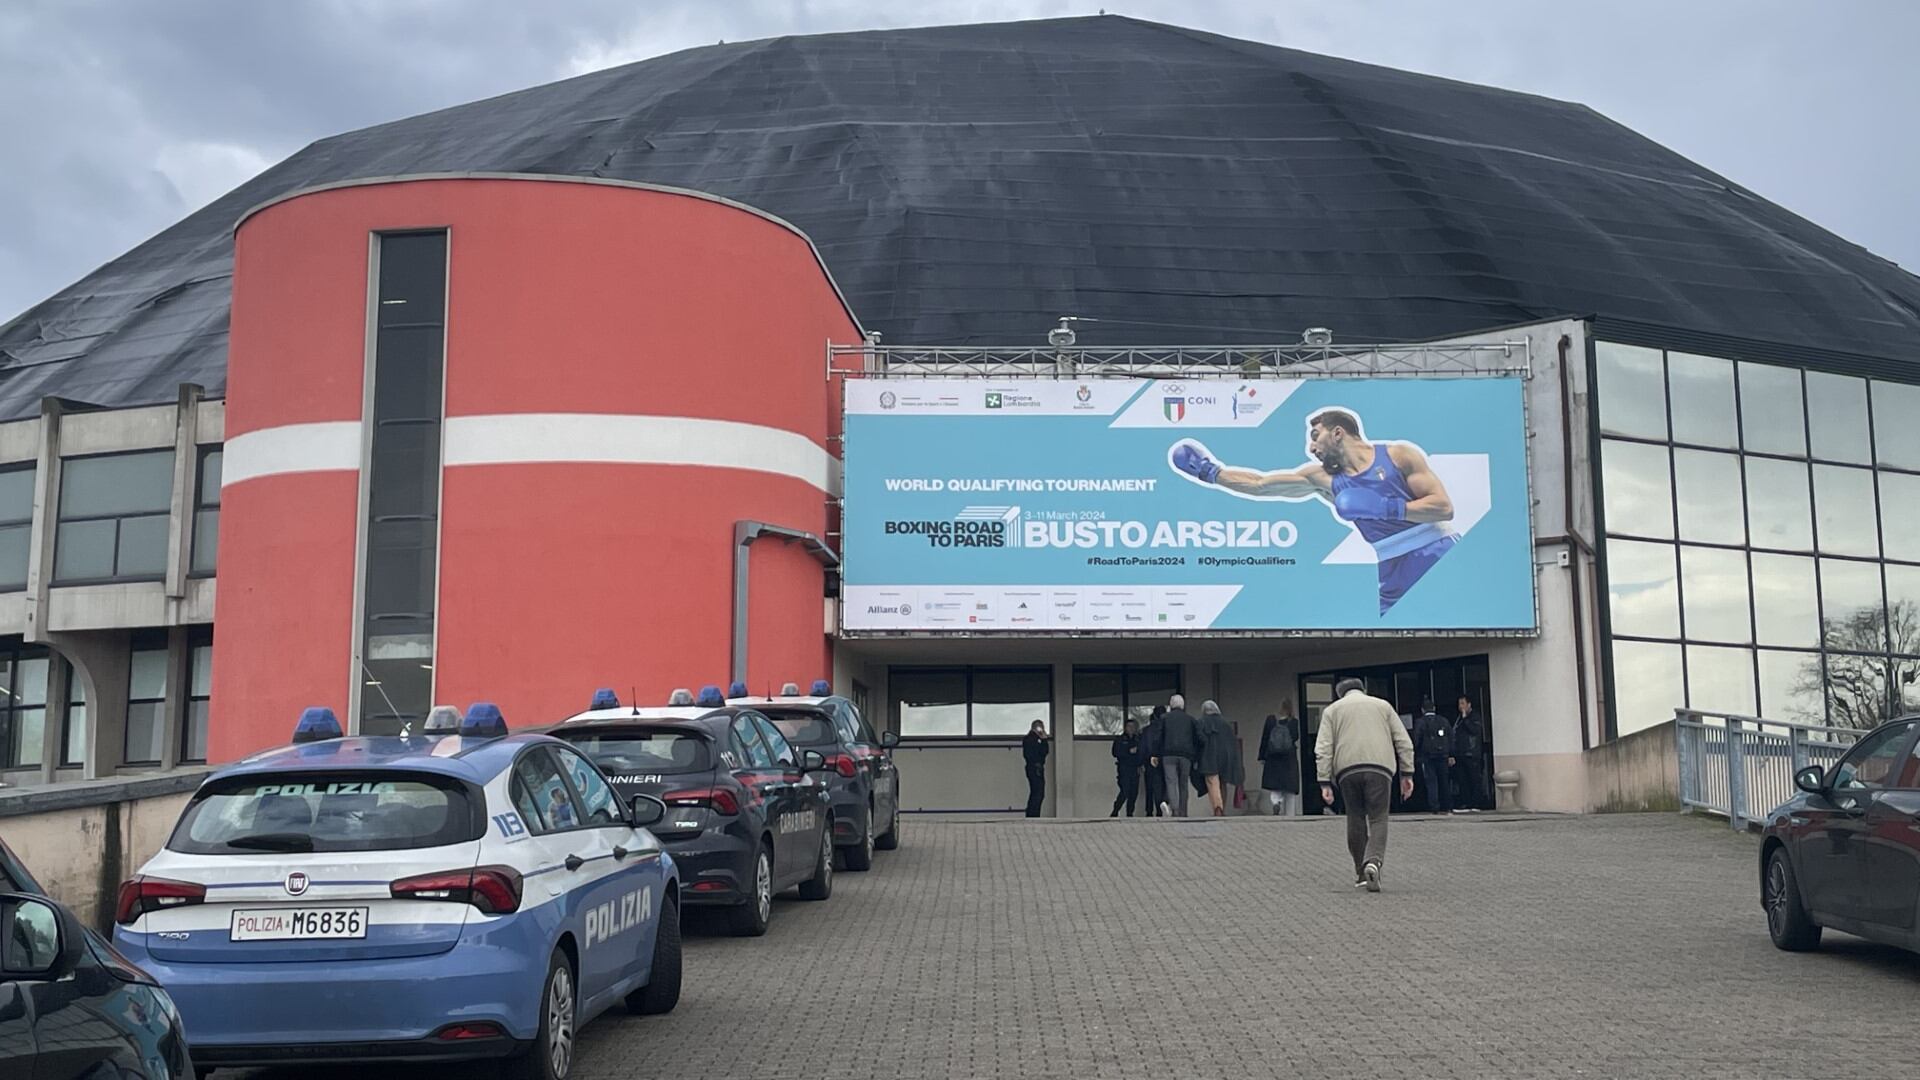 The E-Works Arena in the Italian city of Busto Arsizio